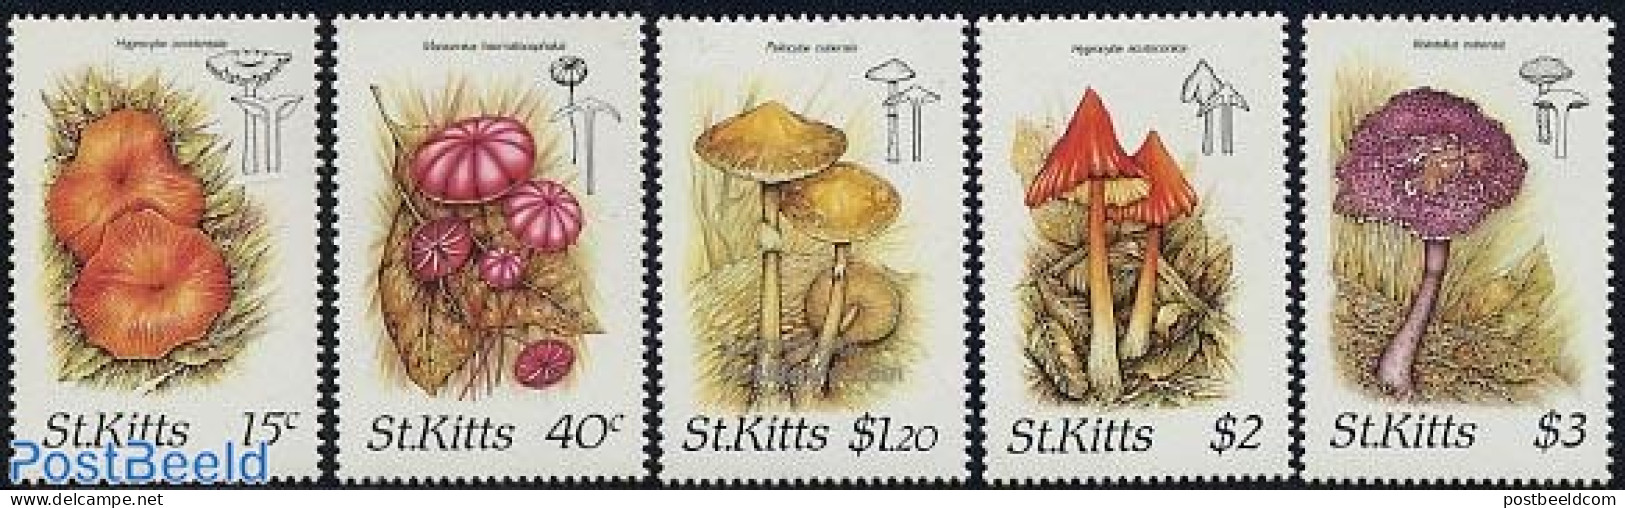 Saint Kitts/Nevis 1987 Mushrooms 5v, Mint NH, Nature - Mushrooms - Pilze